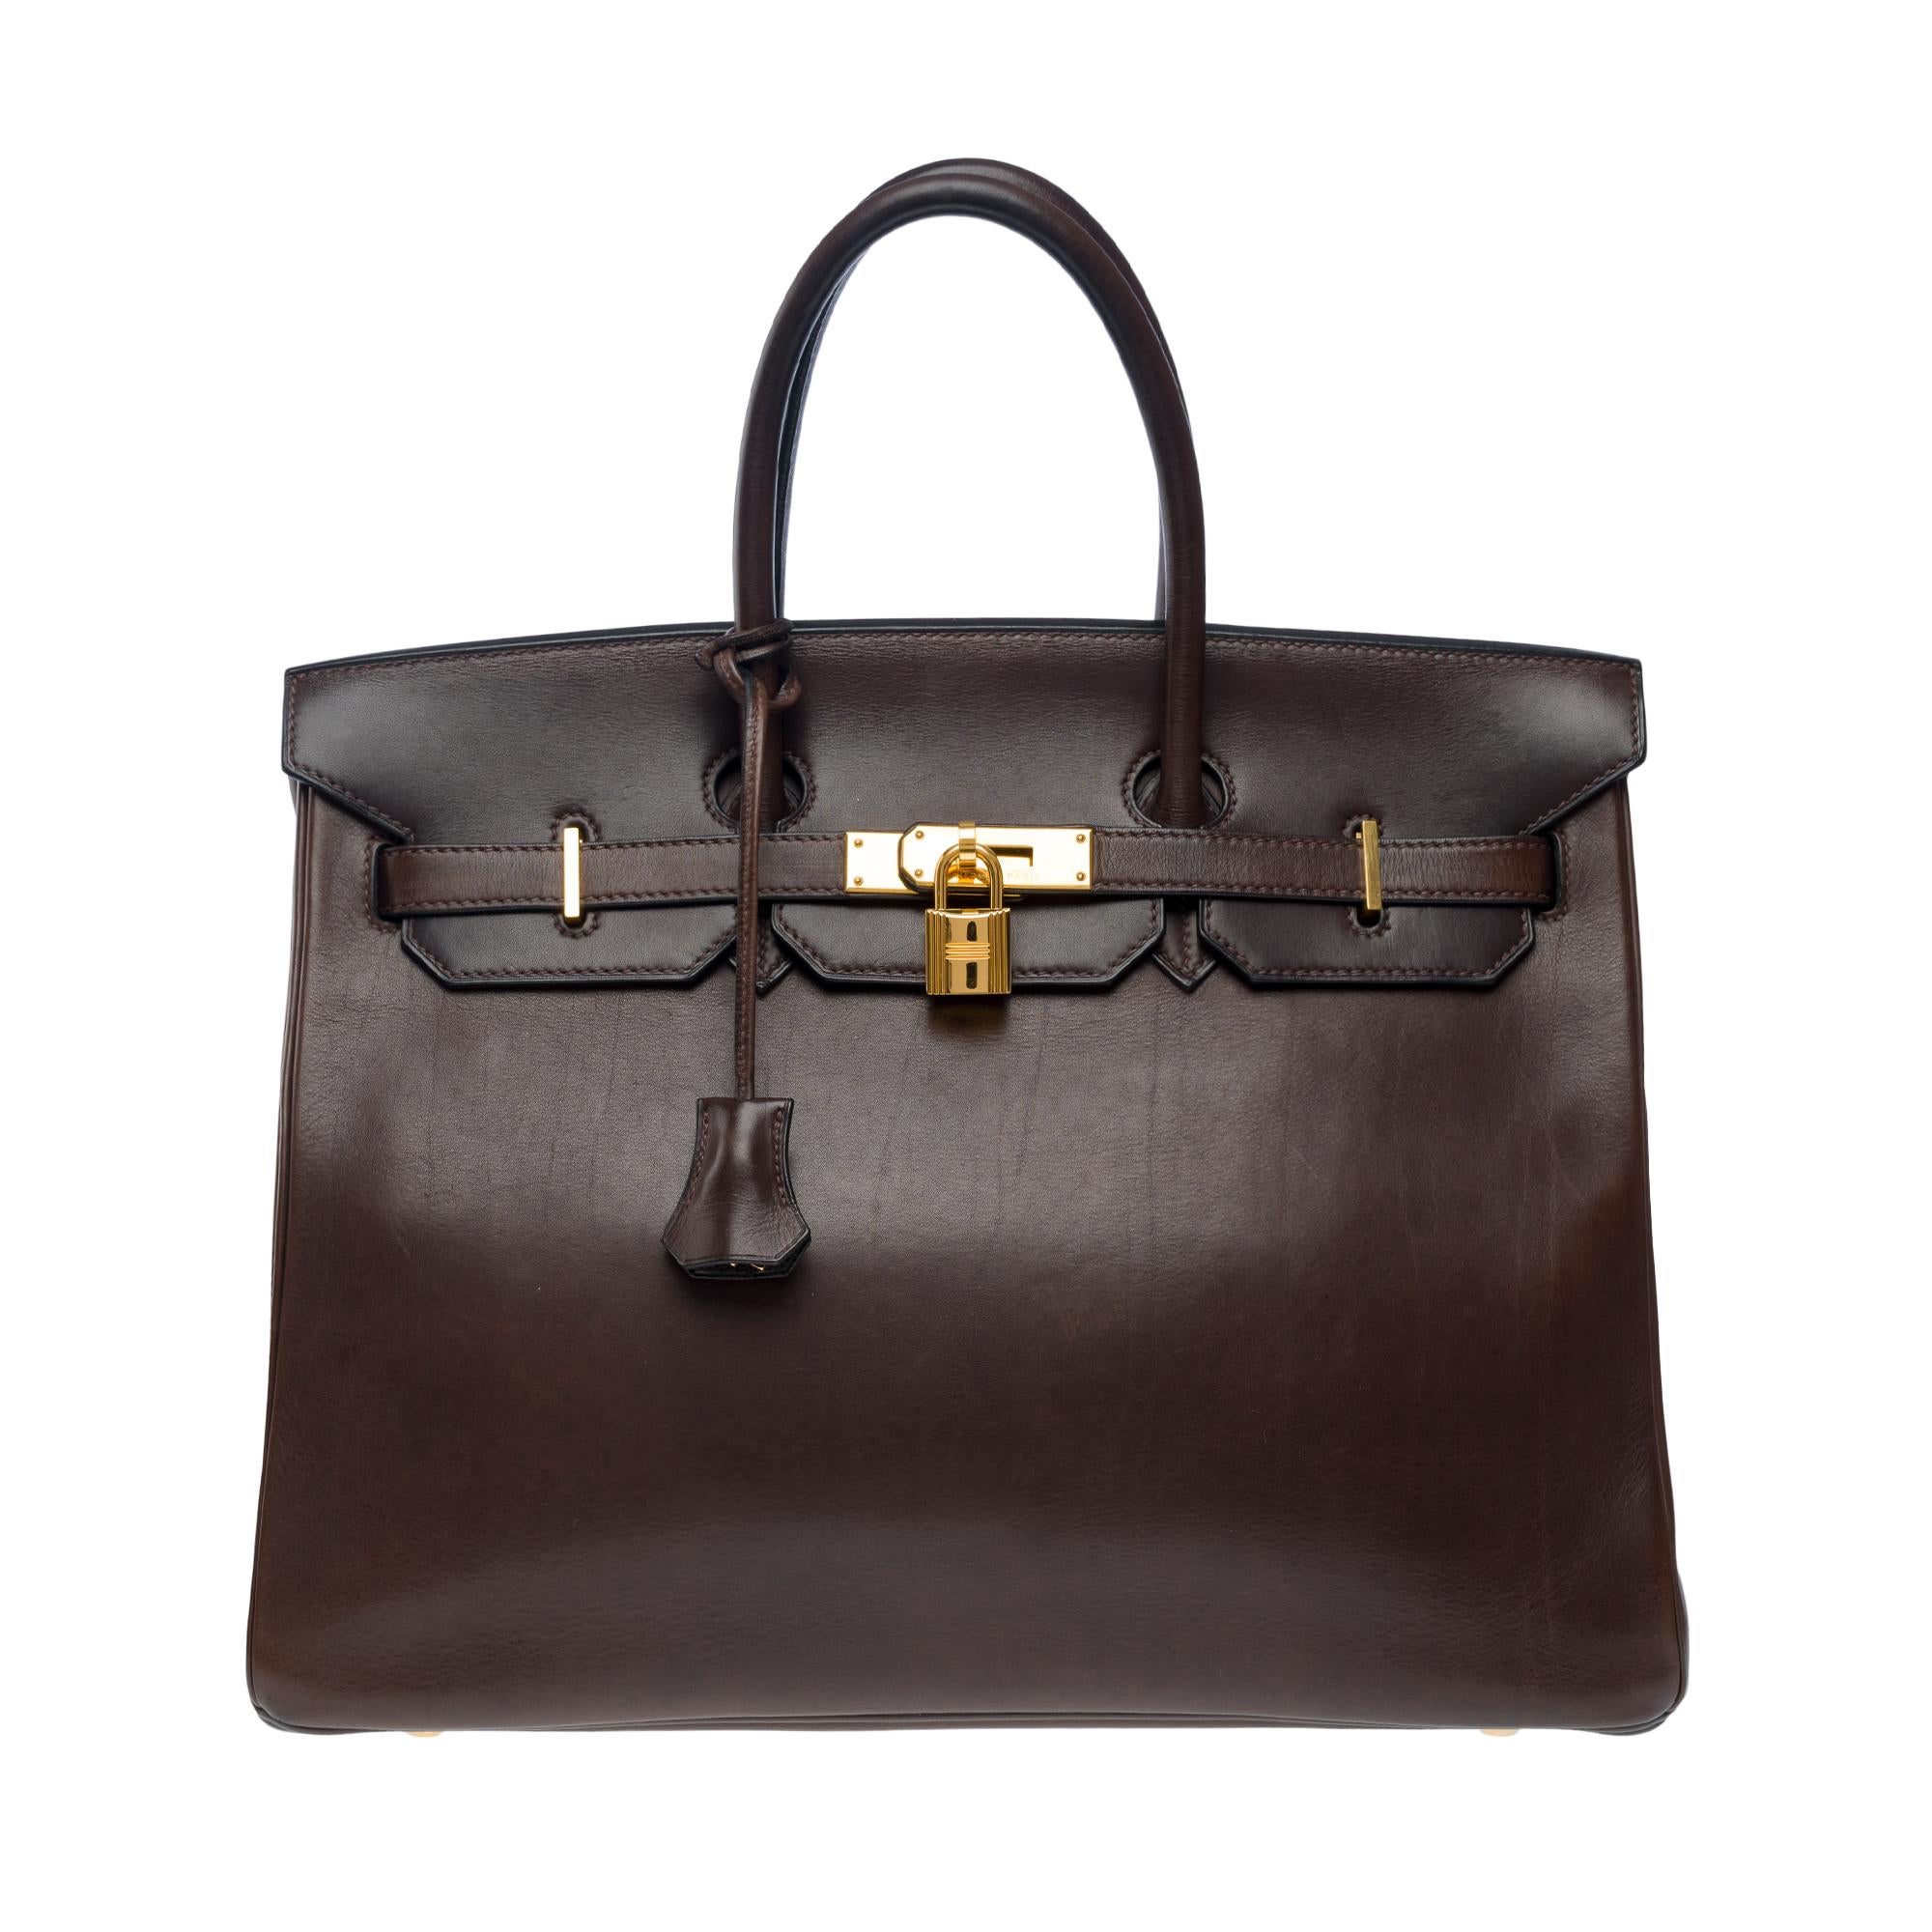 Rare et superbe sac à main Hermès Birkin 35 en cuir Barenia brun ébène, garniture en métal doré, double poignée en cuir brun pour un portage à la main.

Fermeture à rabat
Doublure intérieure en cuir à la main, une poche zippée, une poche